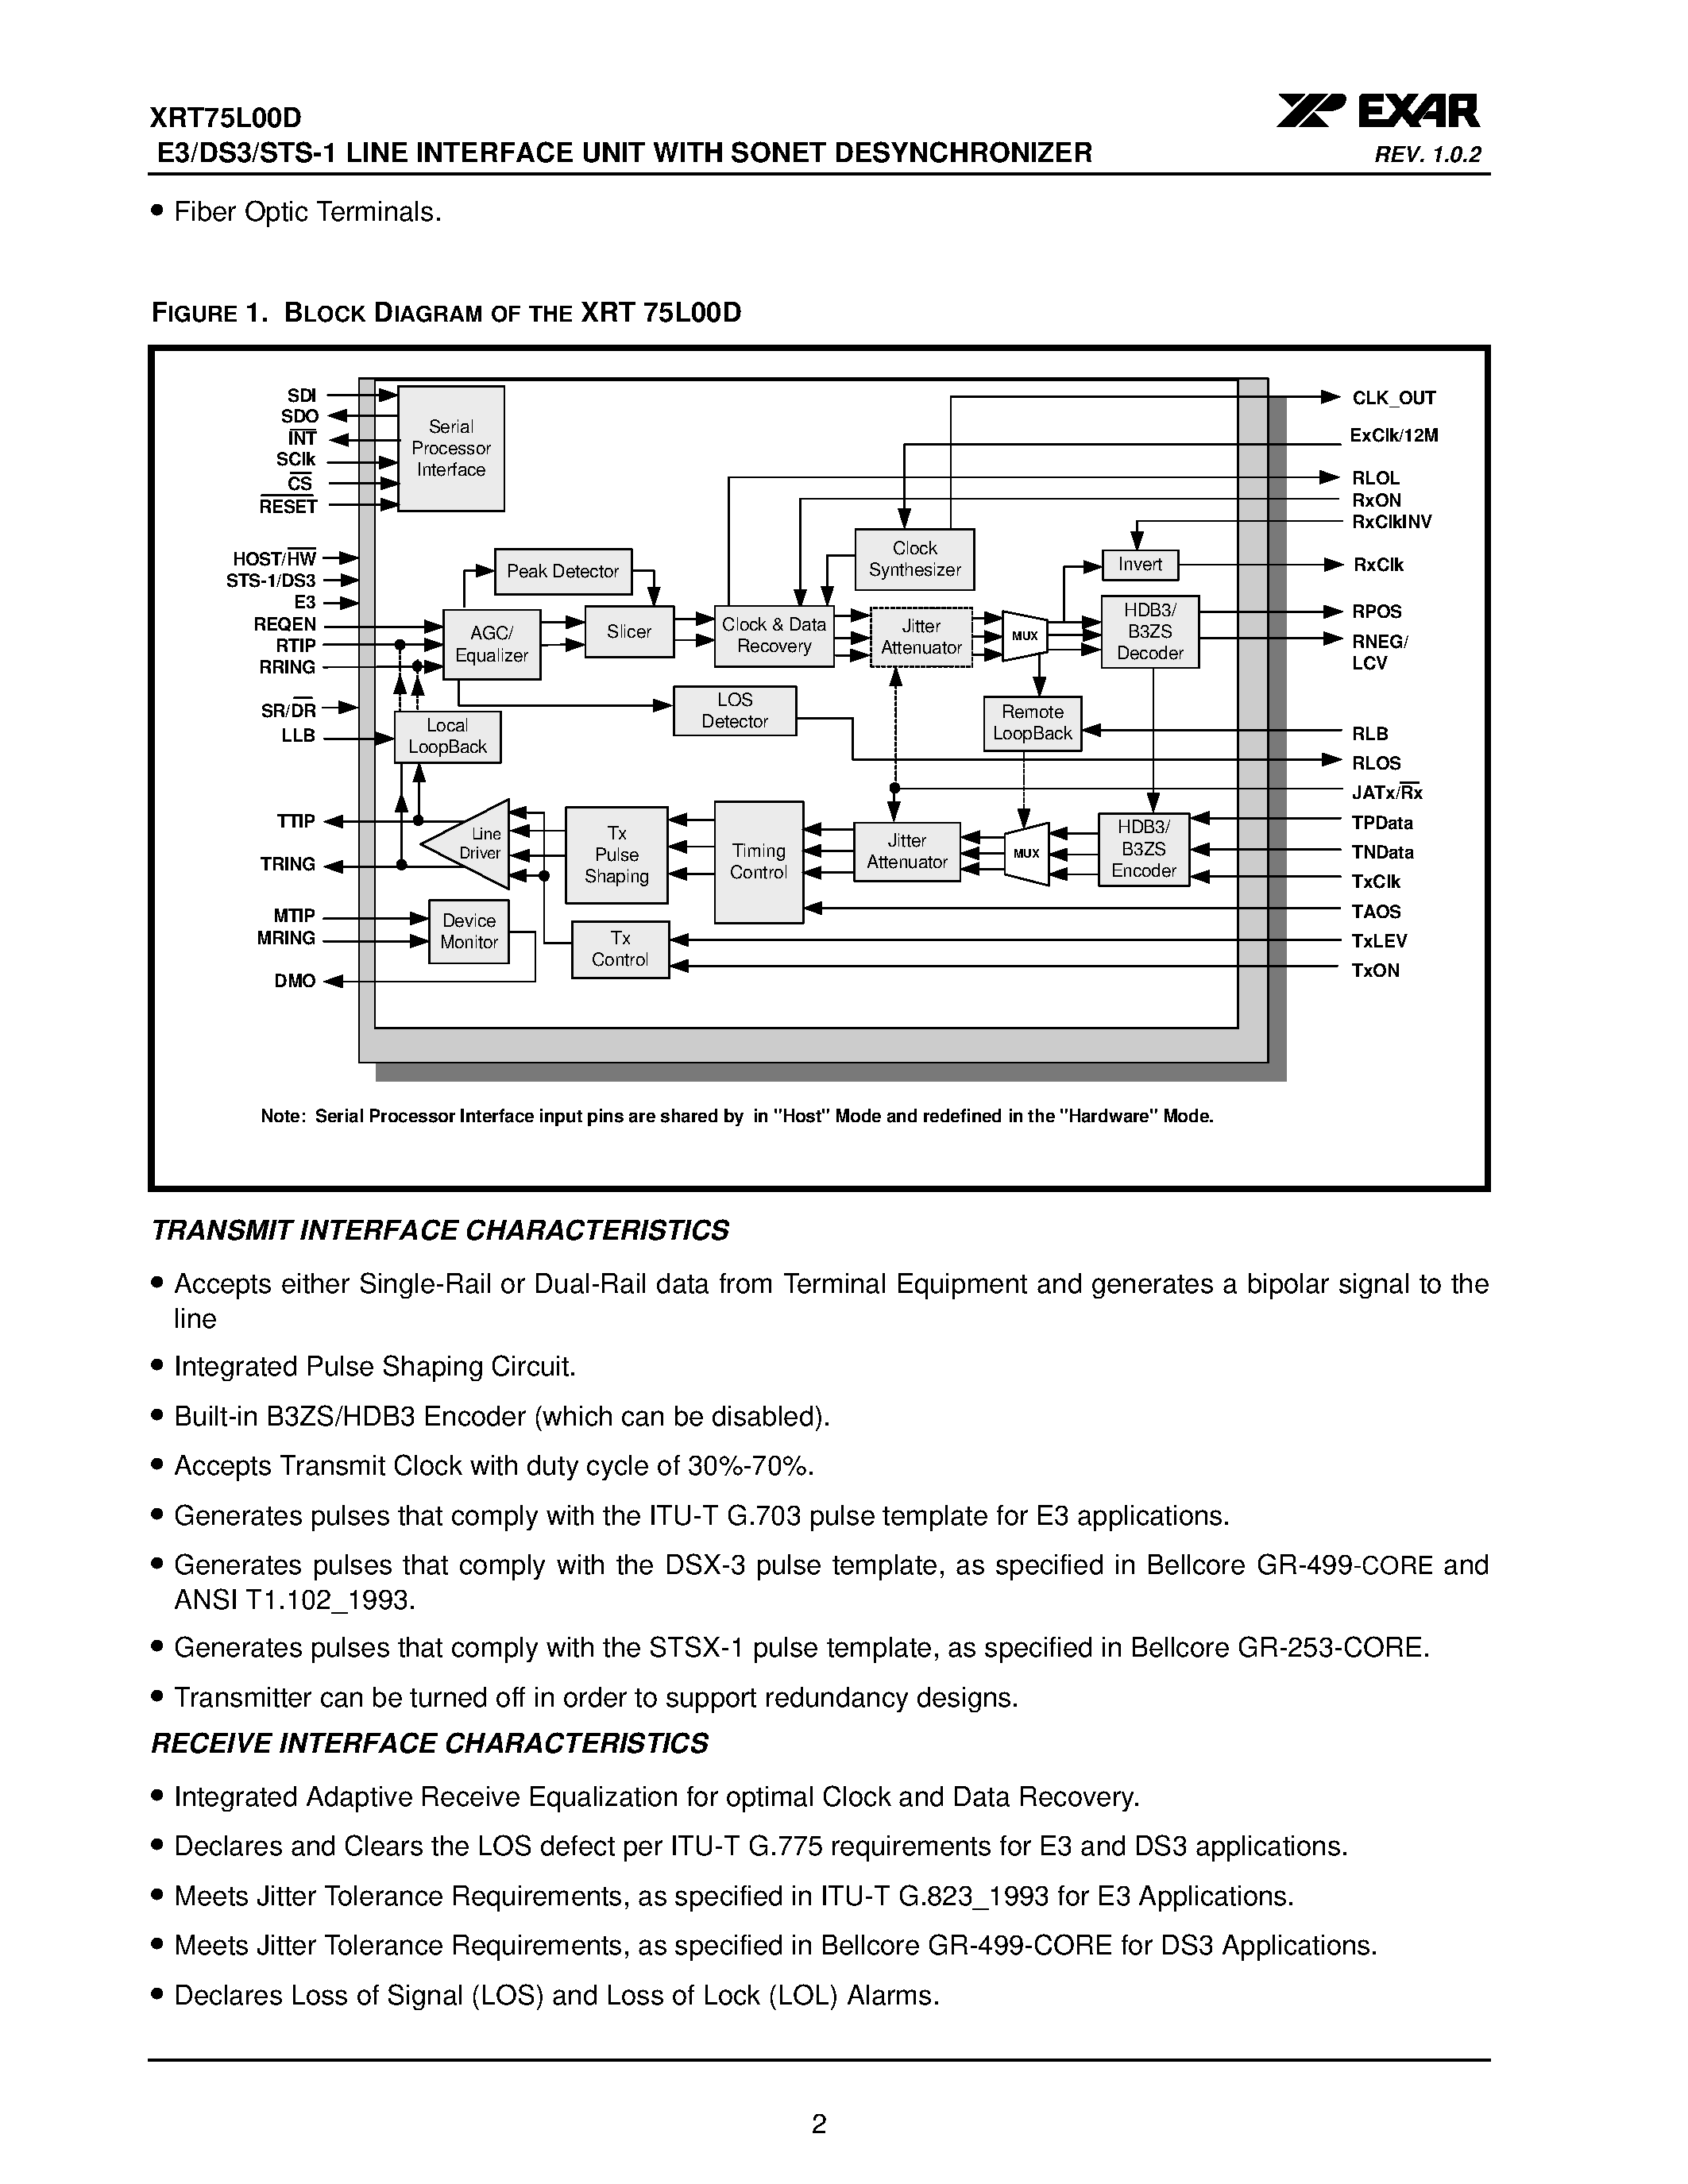 Даташит XRT75L00D - E3/DS3/STS-1 LINE INTERFACE UNIT страница 2